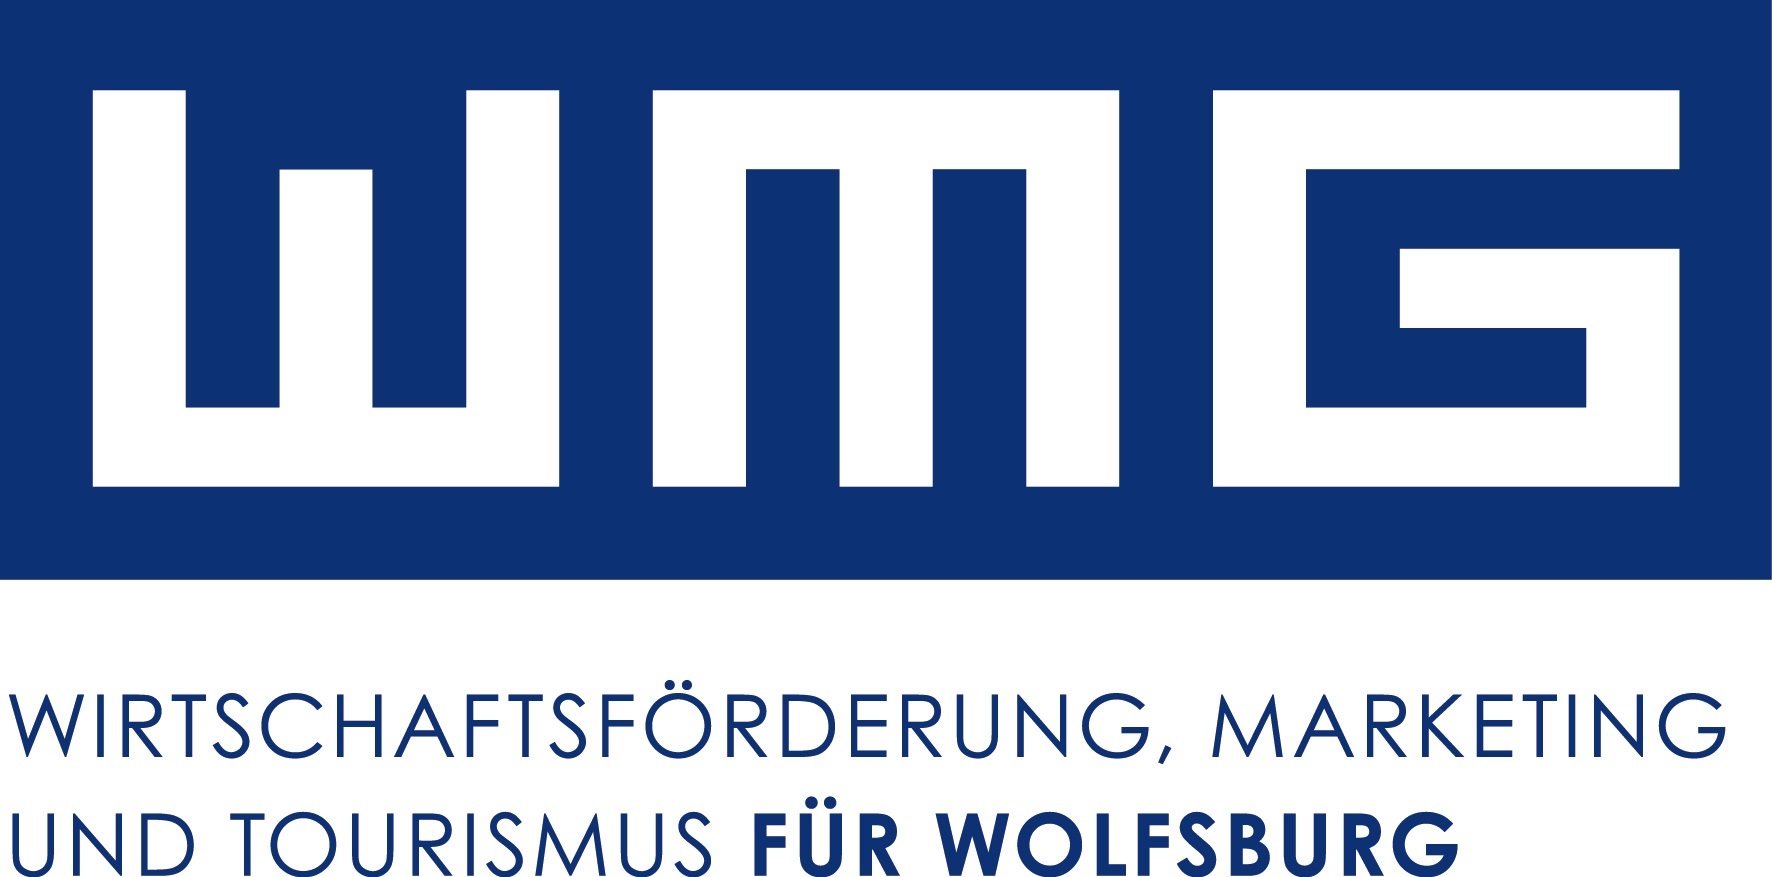 Das Logo der Wolfsburg Wirtschaft und Marketing GmbH